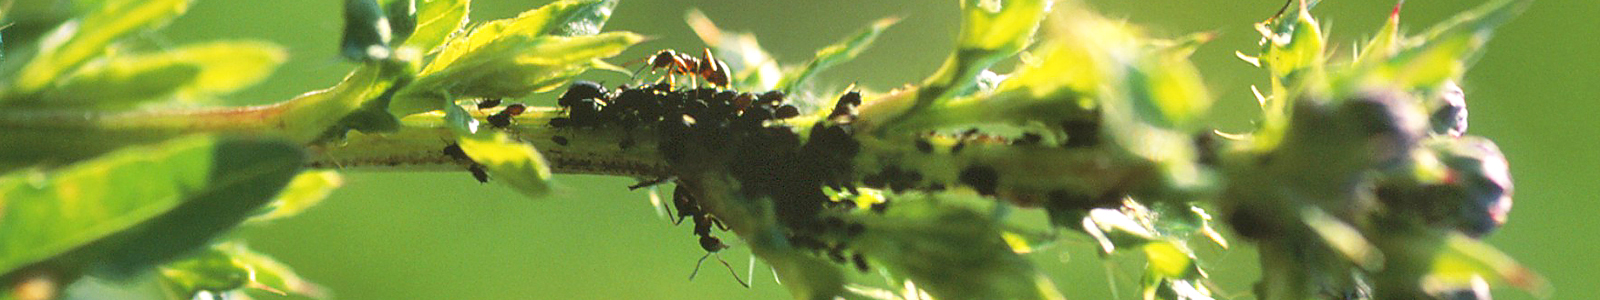 Ameisen an einem Pflanzenstiel ©DLR